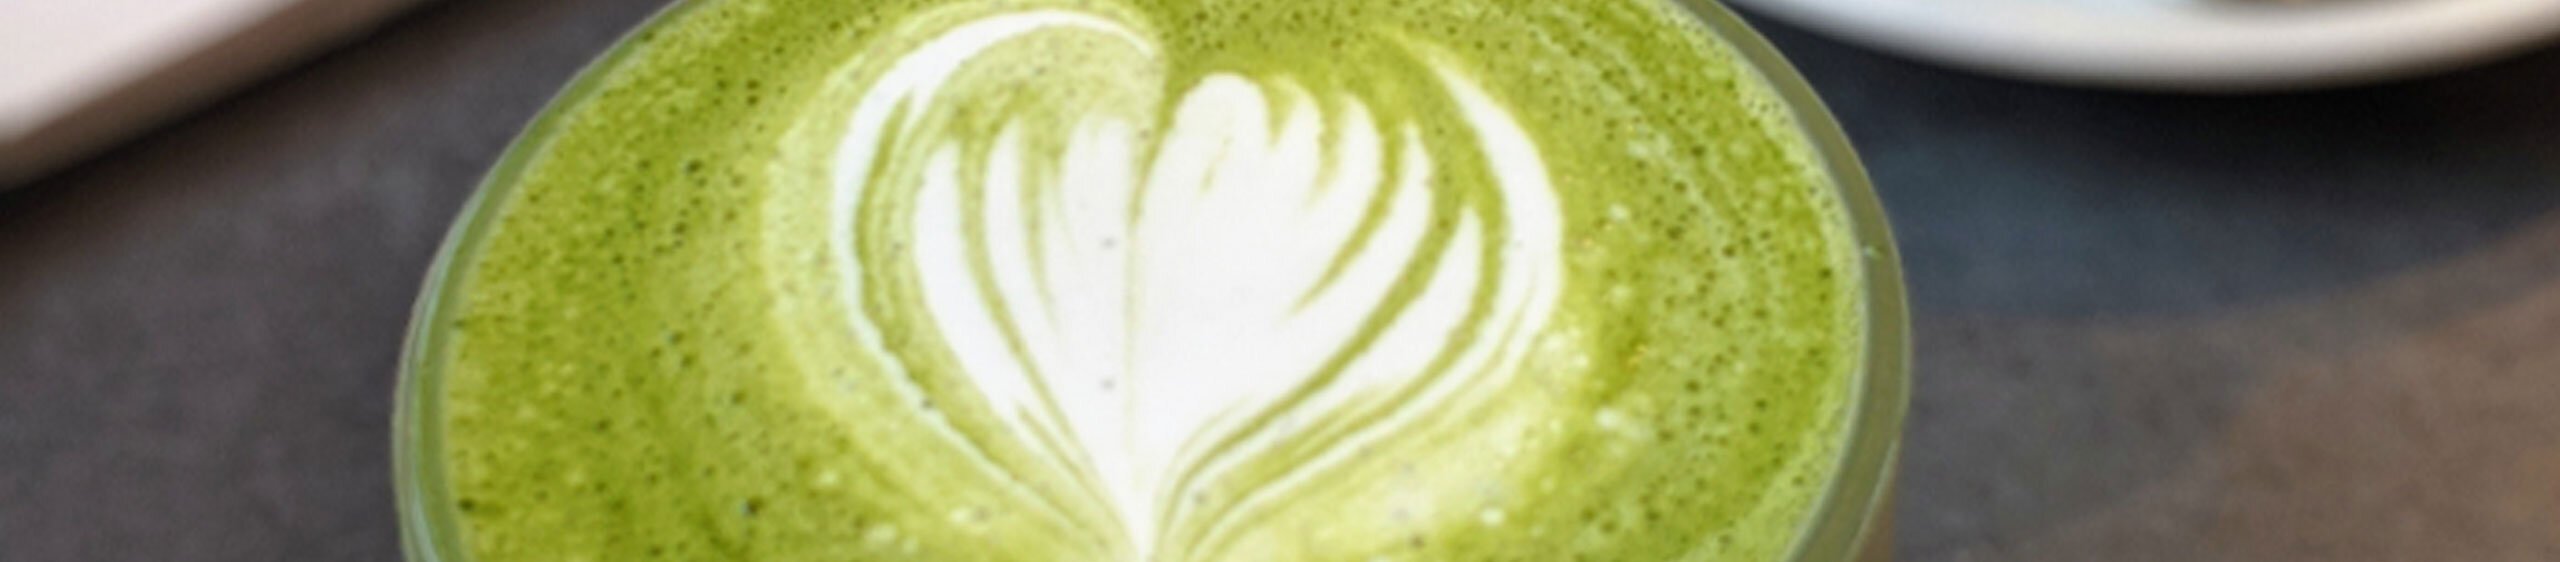 Beauty Matcha latte